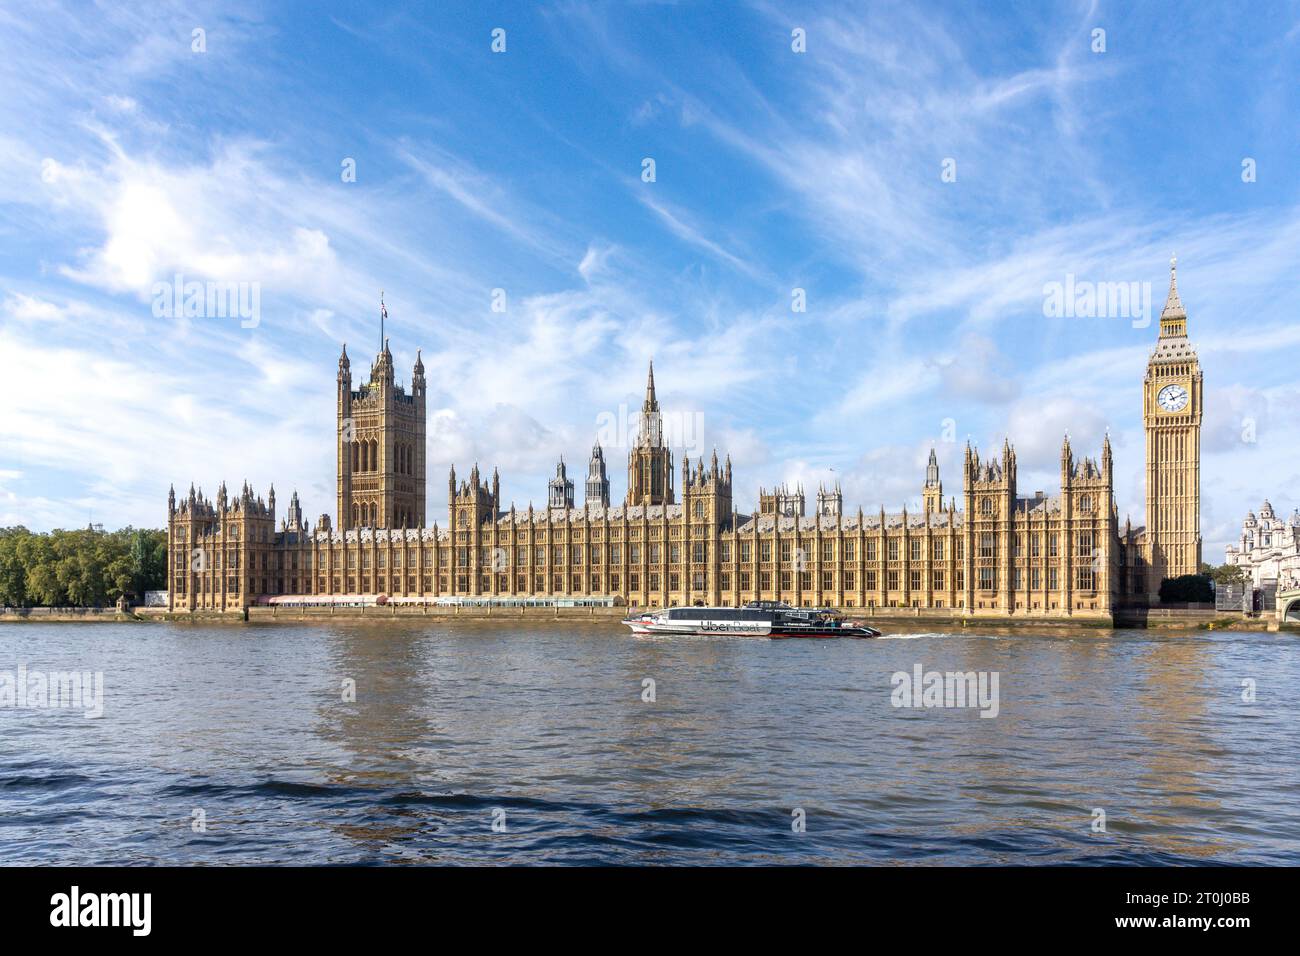 Bateau de croisière Uber passant devant les chambres du Parlement sur la Tamise, South Bank, London Borough of Lambeth, Greater London, Angleterre, Royaume-Uni Banque D'Images